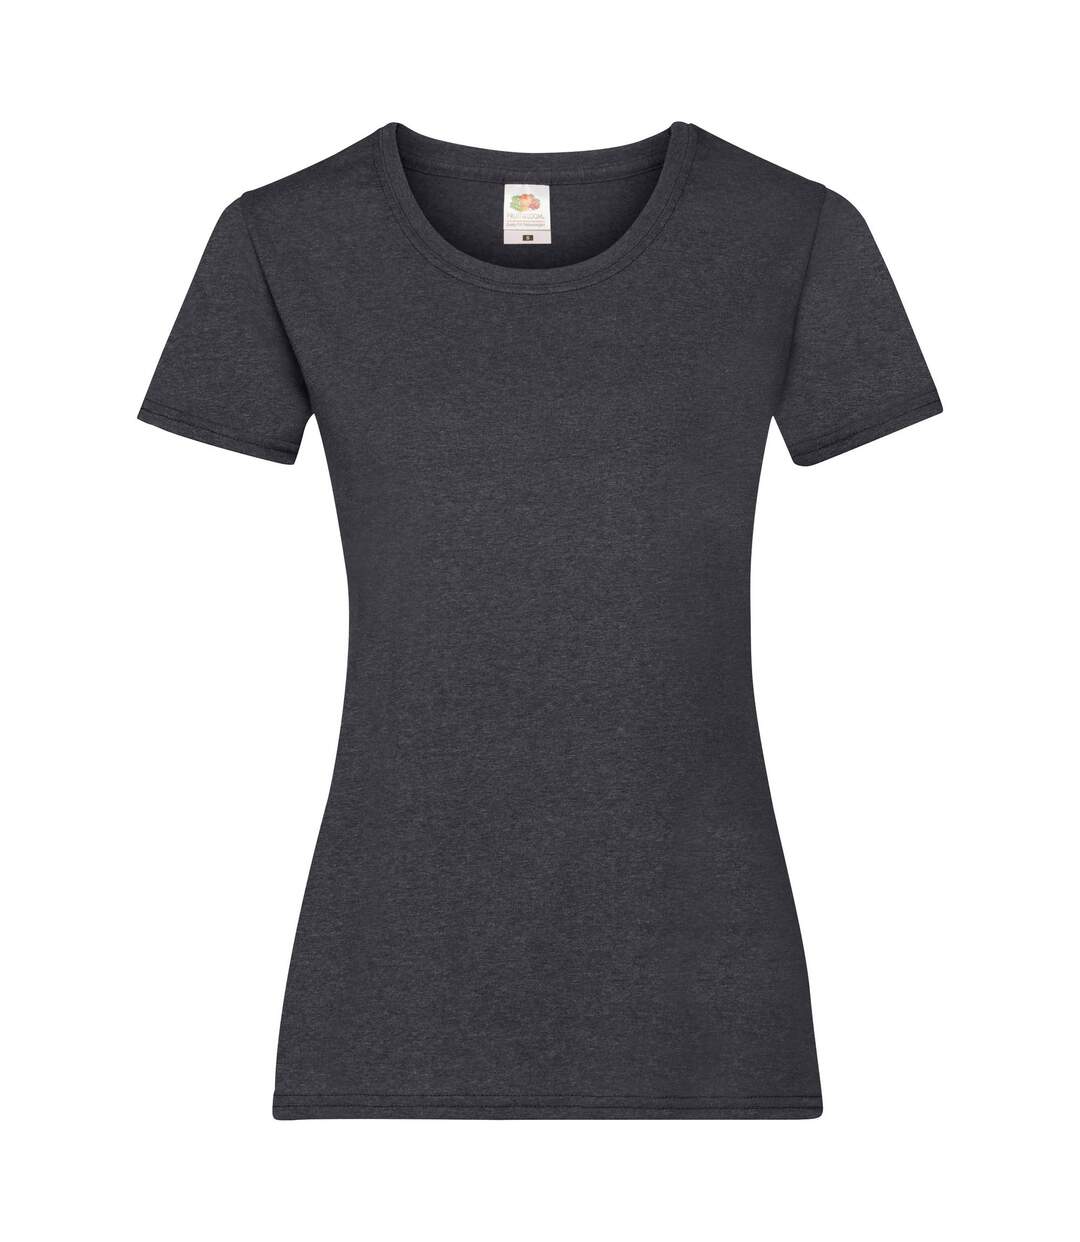 Fruit Of The Loom - T-shirt manches courtes - Femme (Gris foncé chiné) - UTBC1354